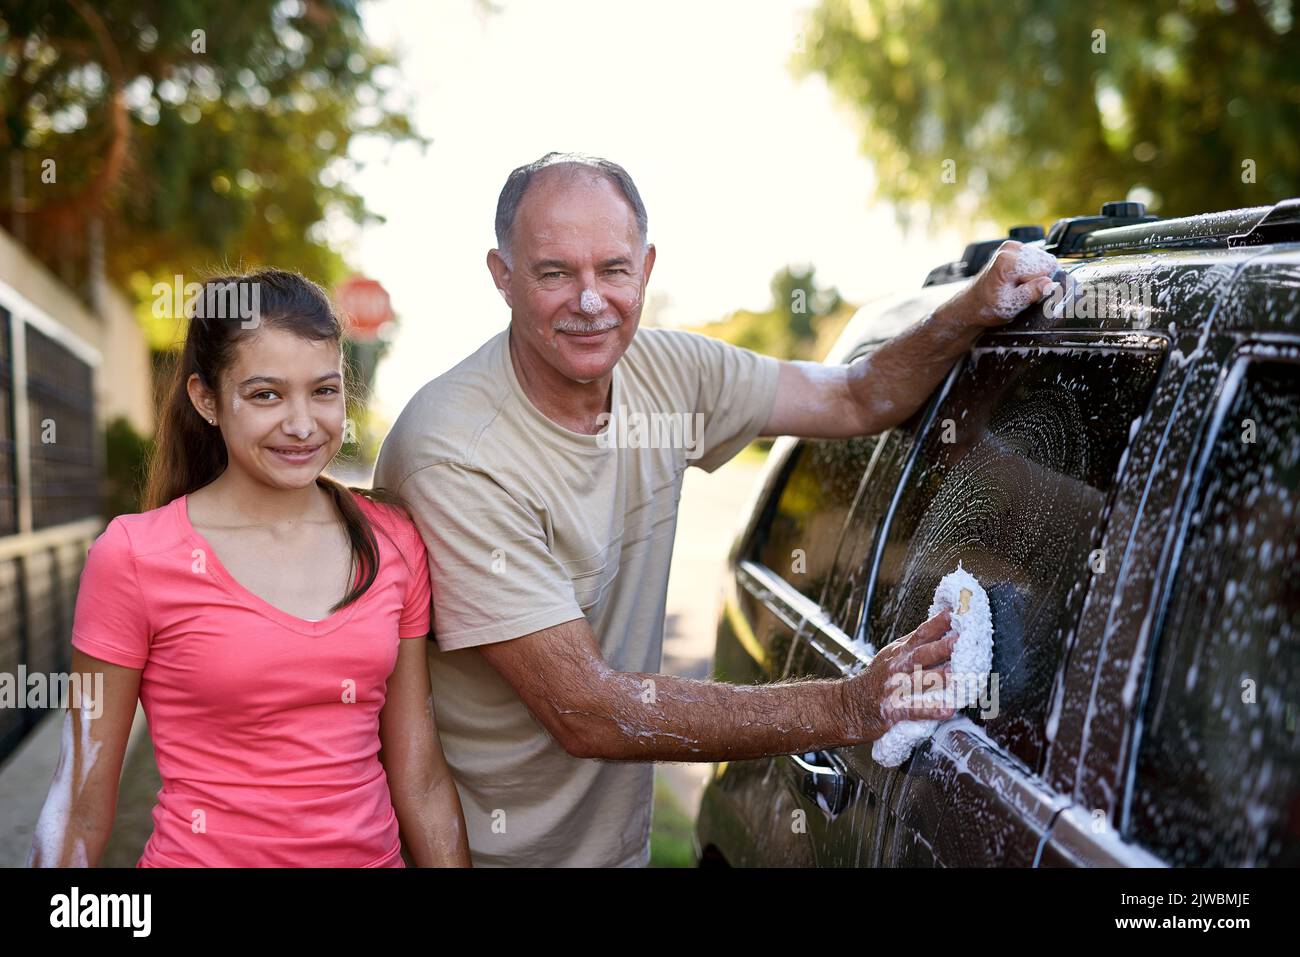 L'auto sarà nuovo di zecca quando theyre fatto. Ritratto di un padre e di una figlia che lavano una macchina insieme fuori. Foto Stock